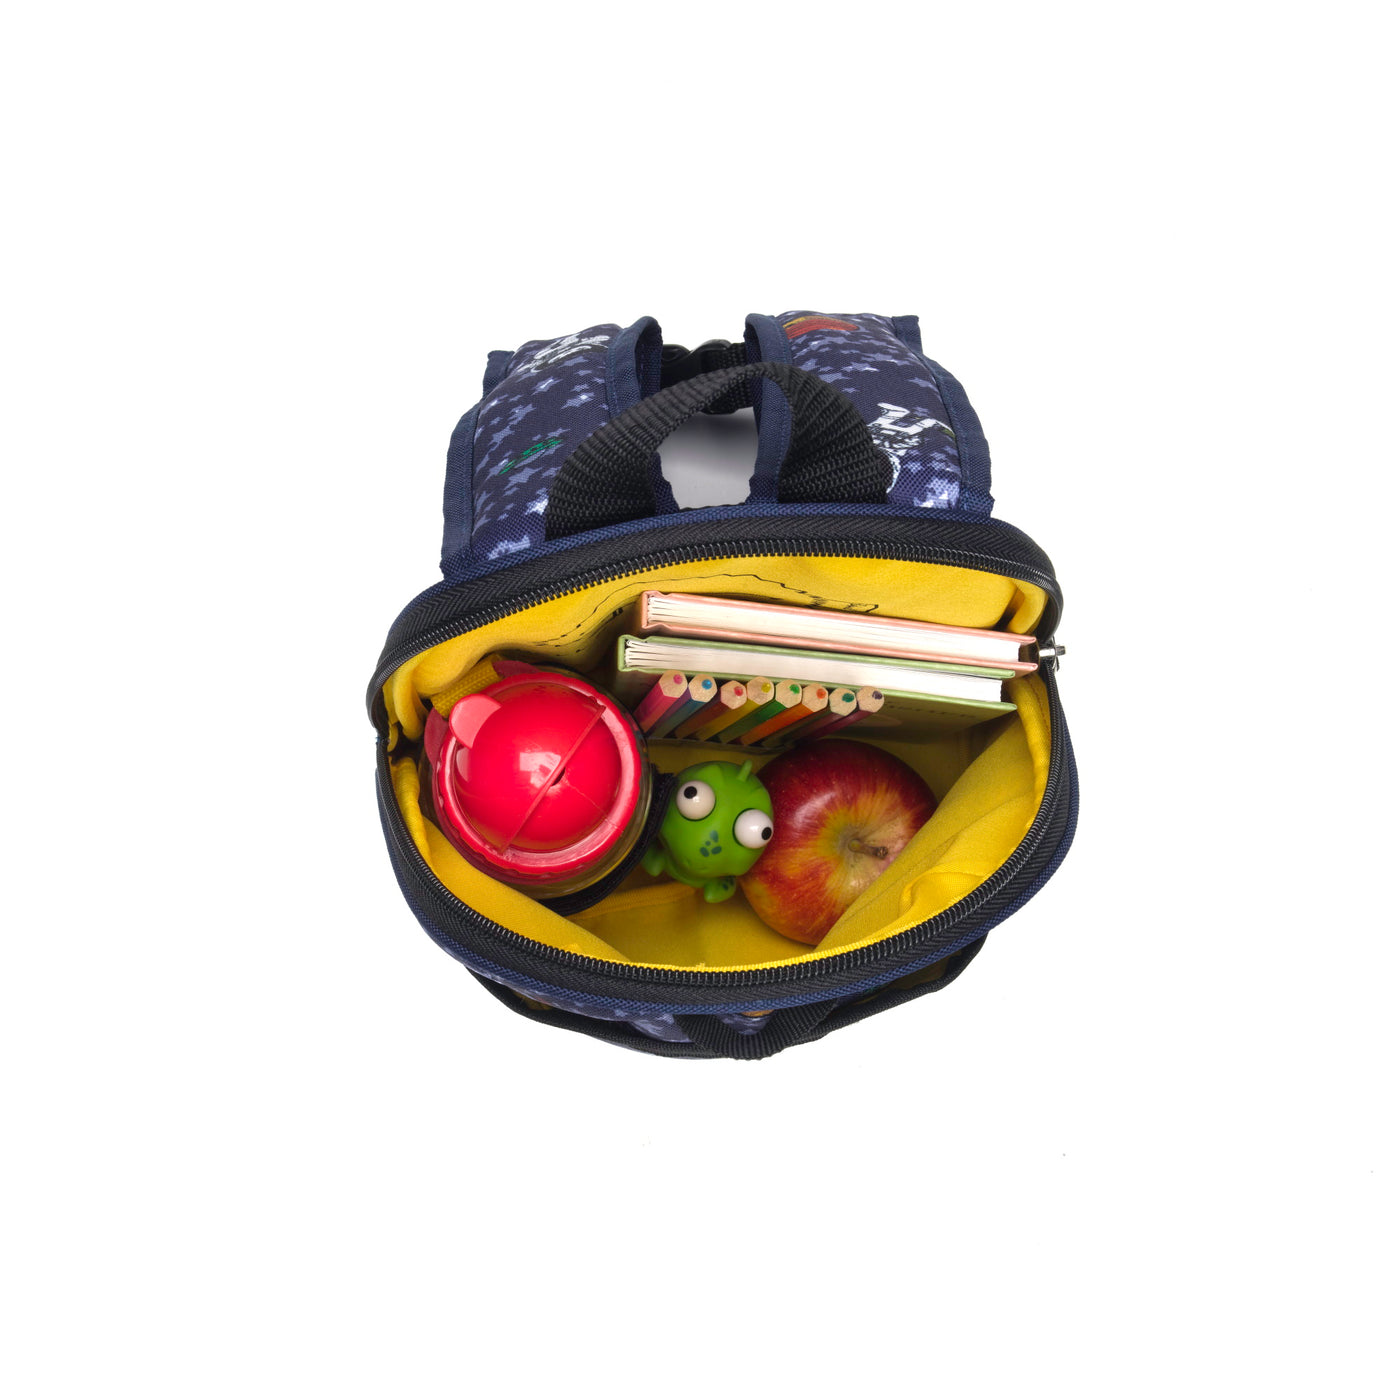 Mini Backpack / Reins - Spaceman